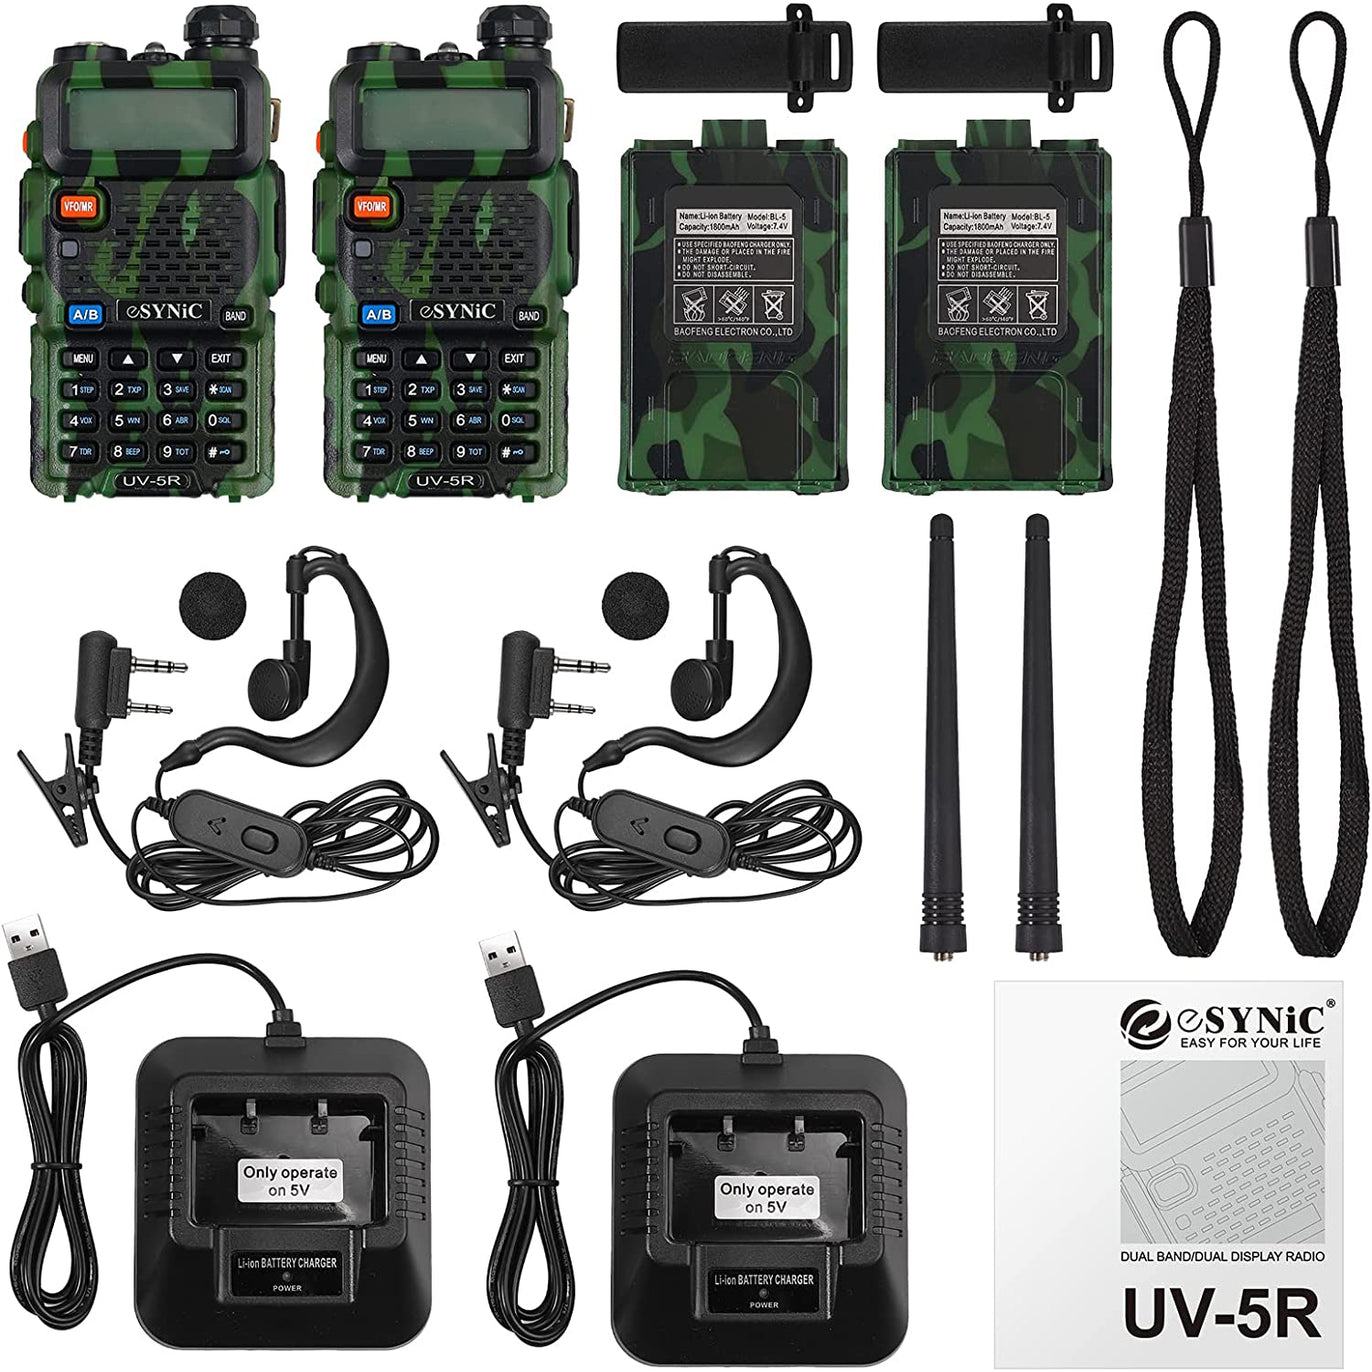 eSynic UV-5R Walkie Talkie Dual Band VHF/UHF UV5R 128 Memory